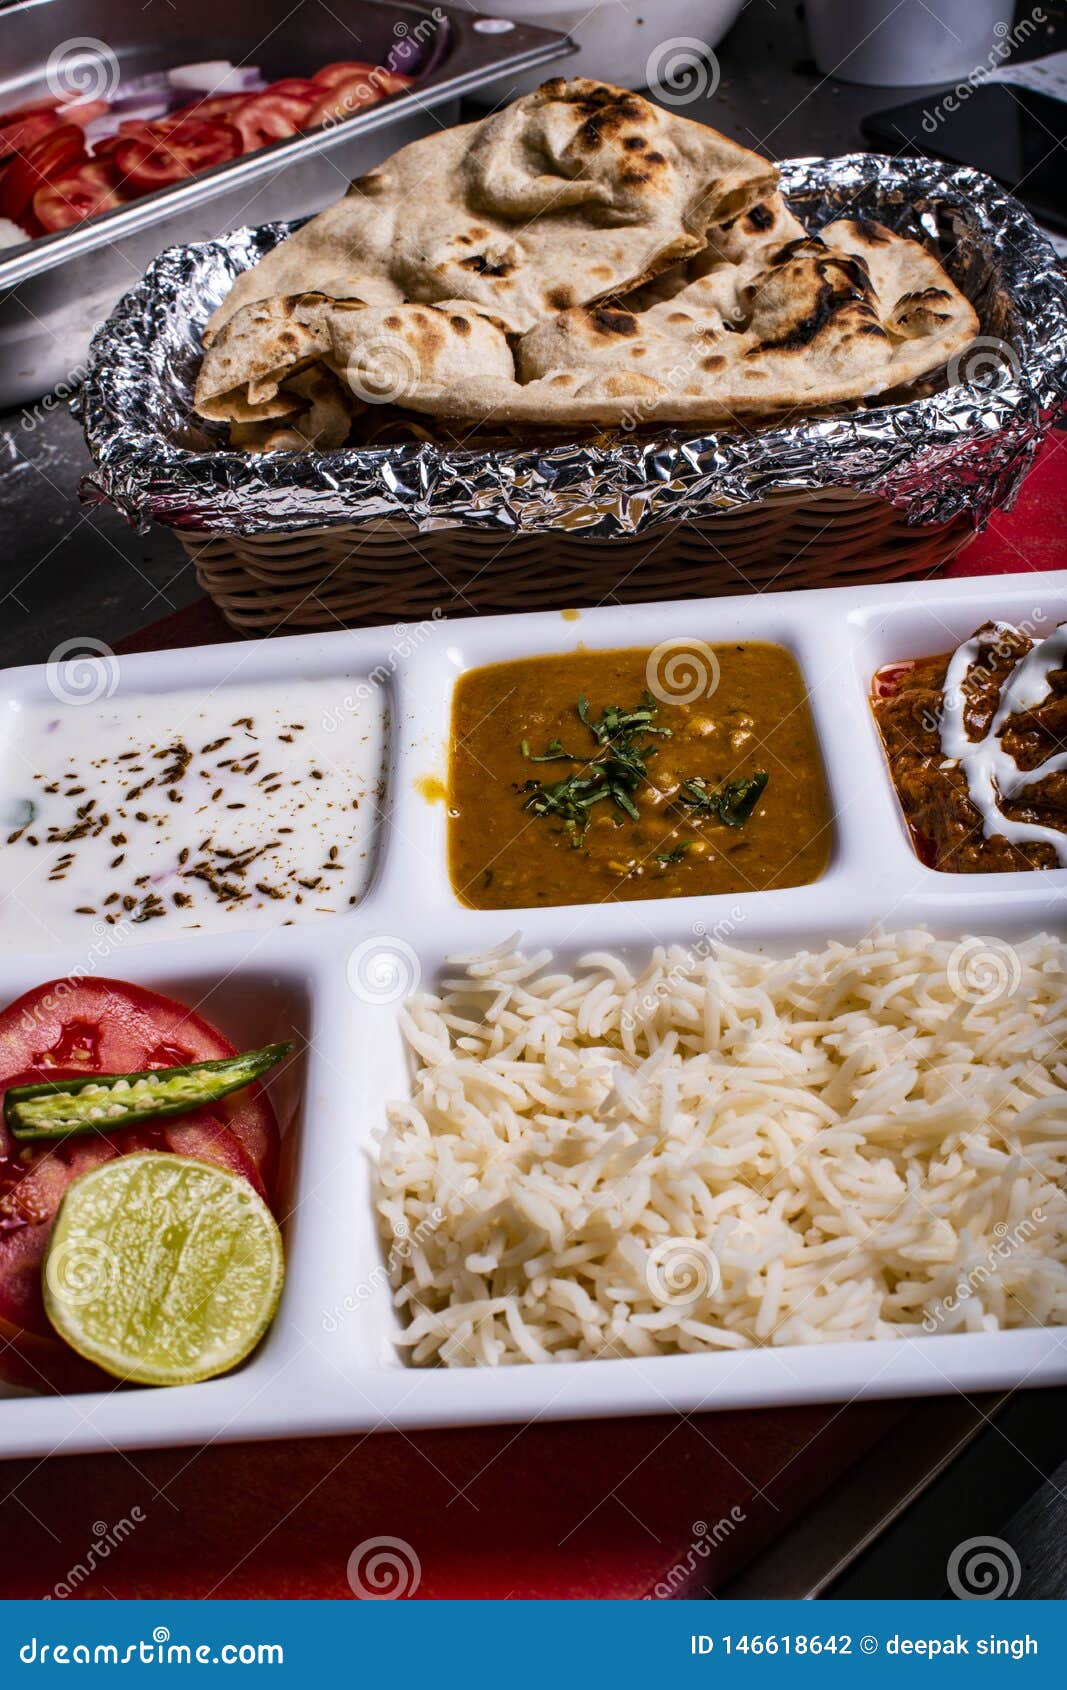 Imagen india de la comida para hacer algunos ambientes del postie. Placa india de la comida que es perfecta para un cierto algo d?a